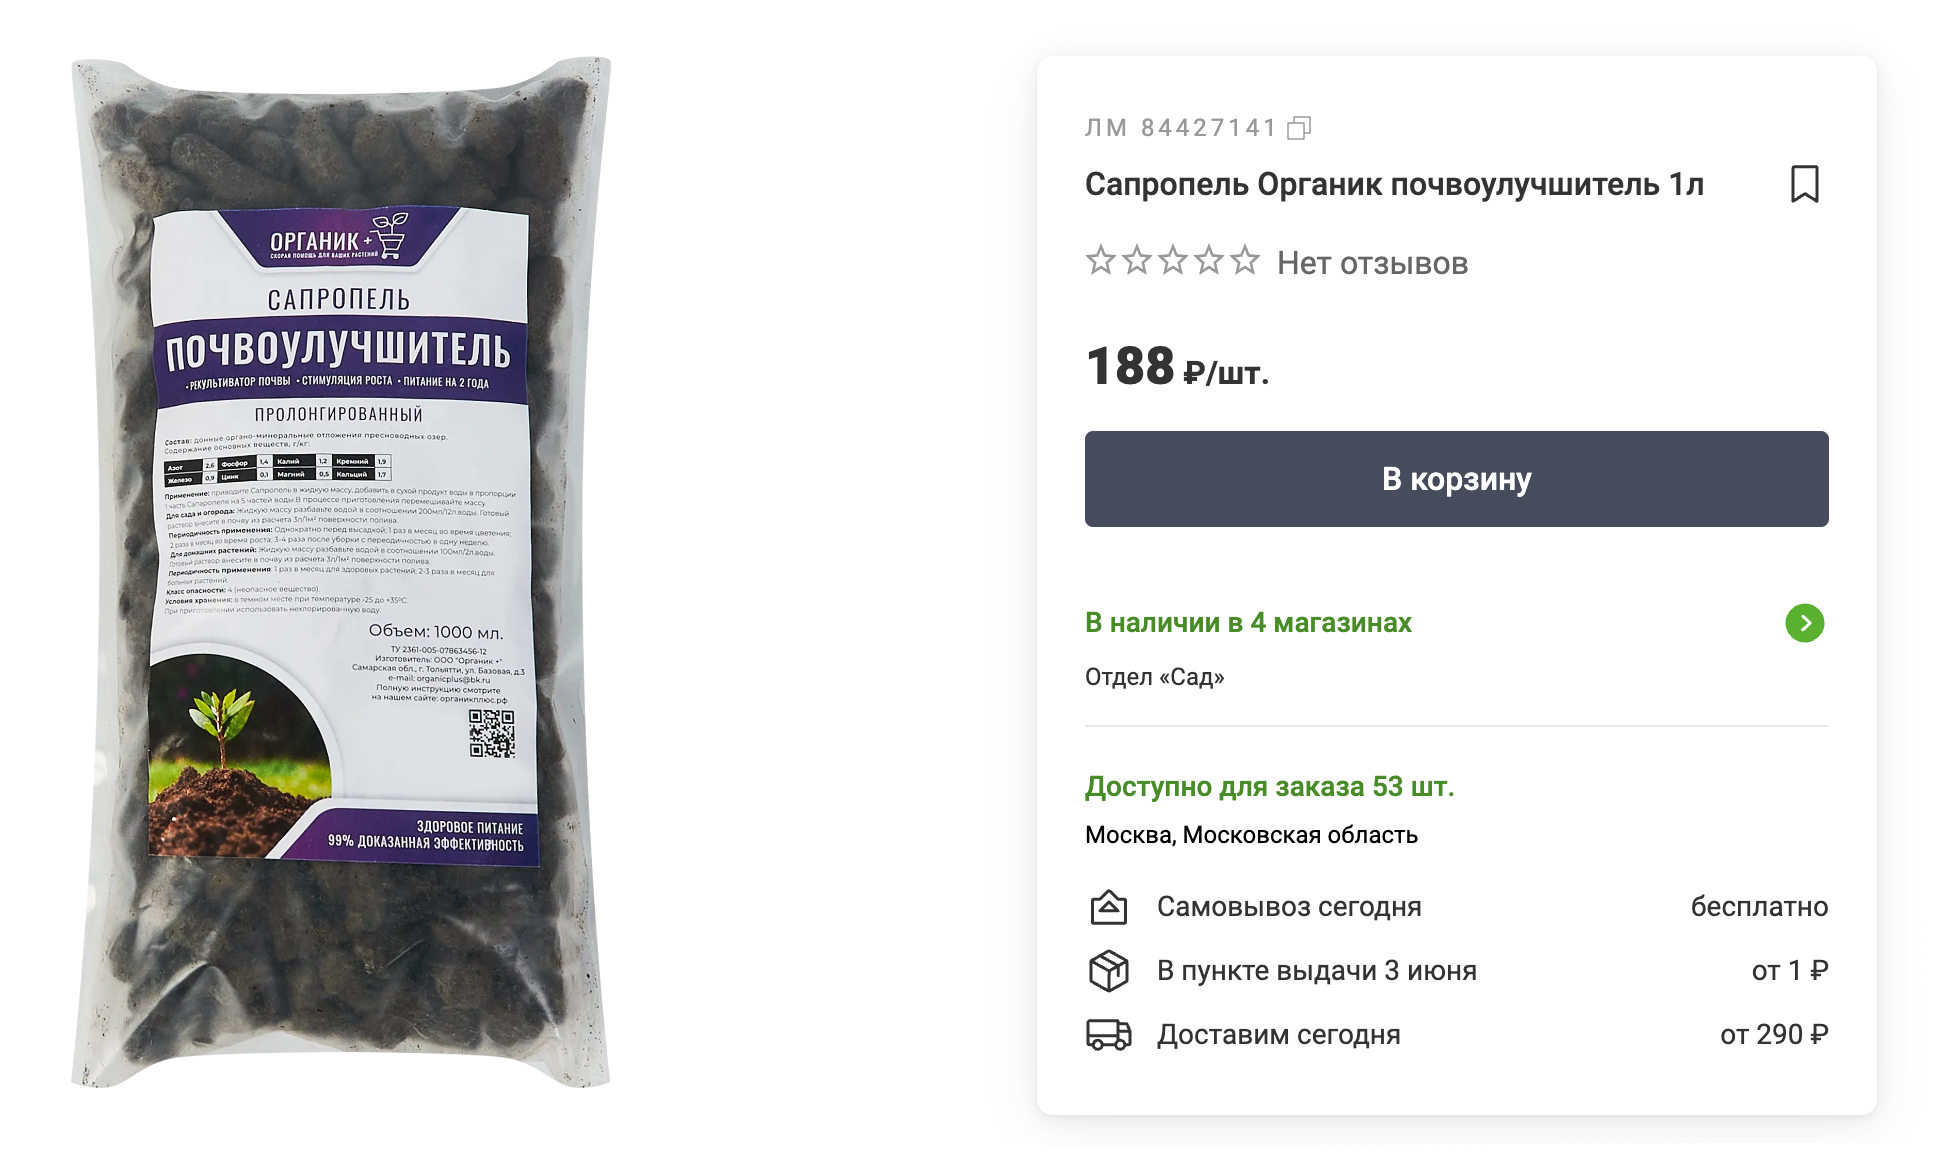 Сапропель продается в садовых супермаркетах и на маркетплейсах в разной упаковке. Источник: leroymerlin.ru